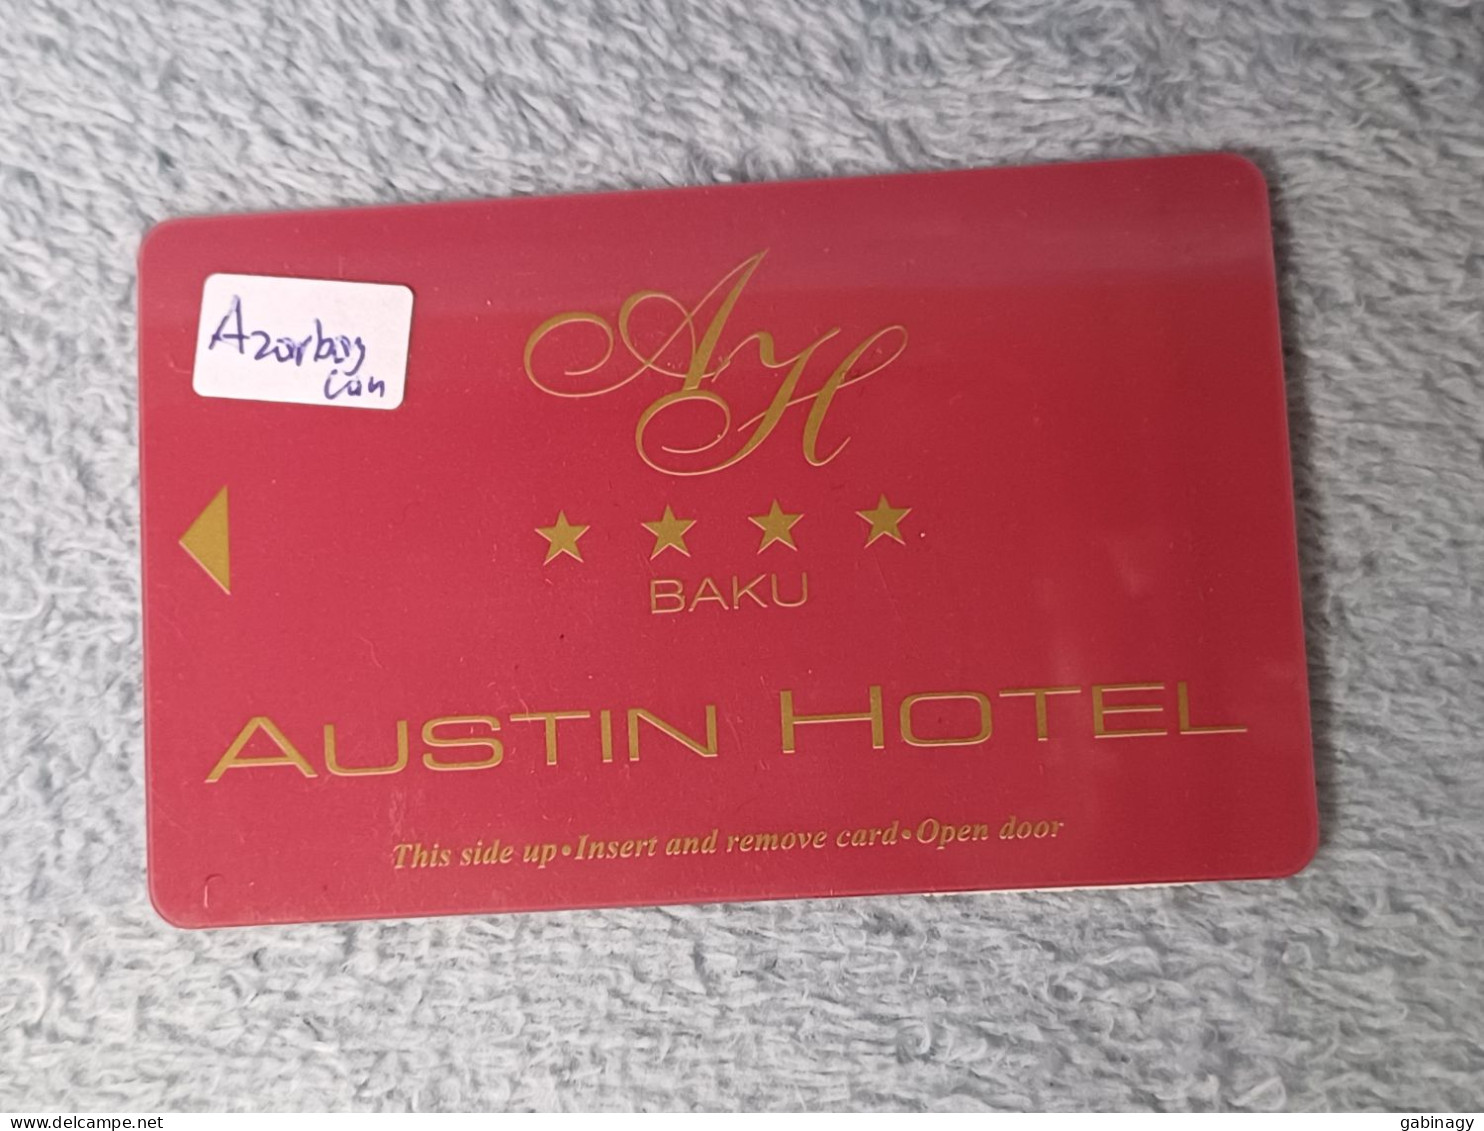 HOTEL KEYS - 2620 - AZERBAIJAN - AUSTIN HOTEL BAKU - Hotelsleutels (kaarten)